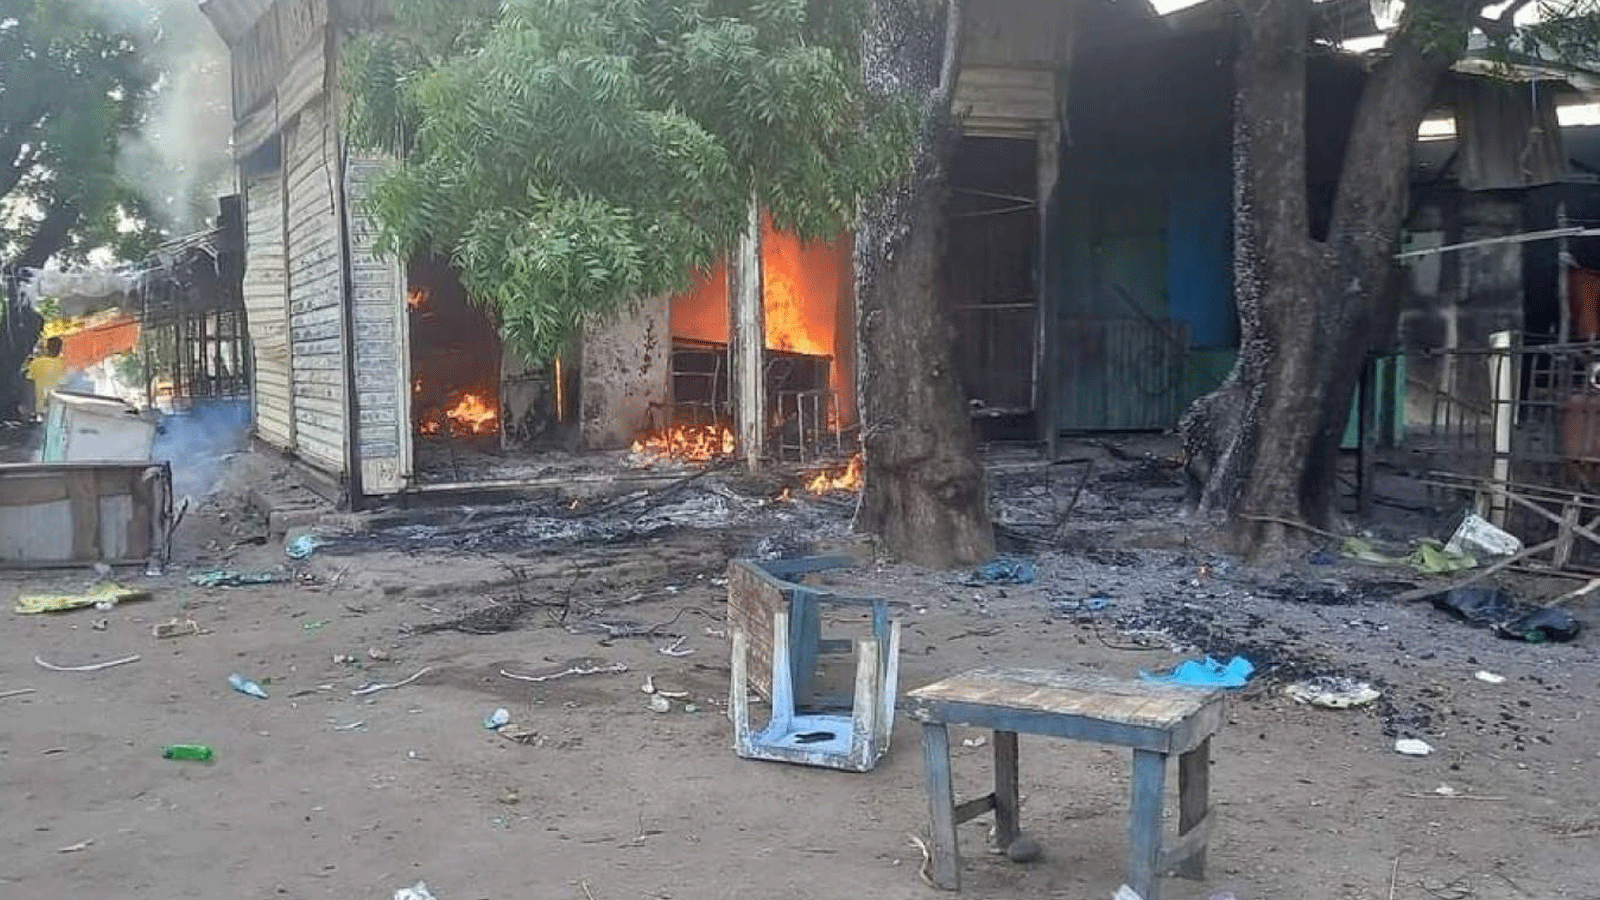 إضرام النيران في نحو 16 متجرا في أعمال العنف القبلي في ولاية النيل الأزرق بالسودان قبل فرض حظر التجول في 16 حزيران\يونيو 2022 (تويتر)